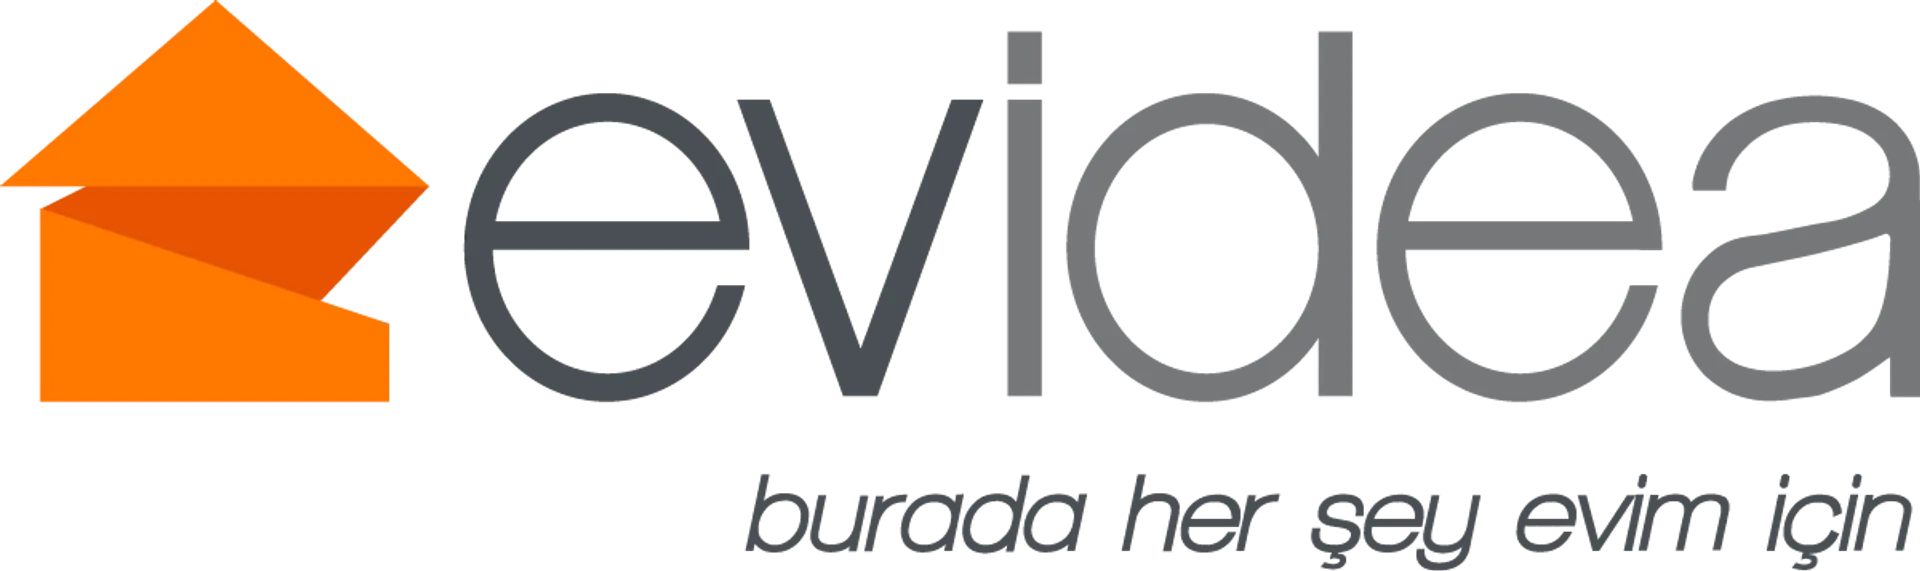 EVIDEA logo